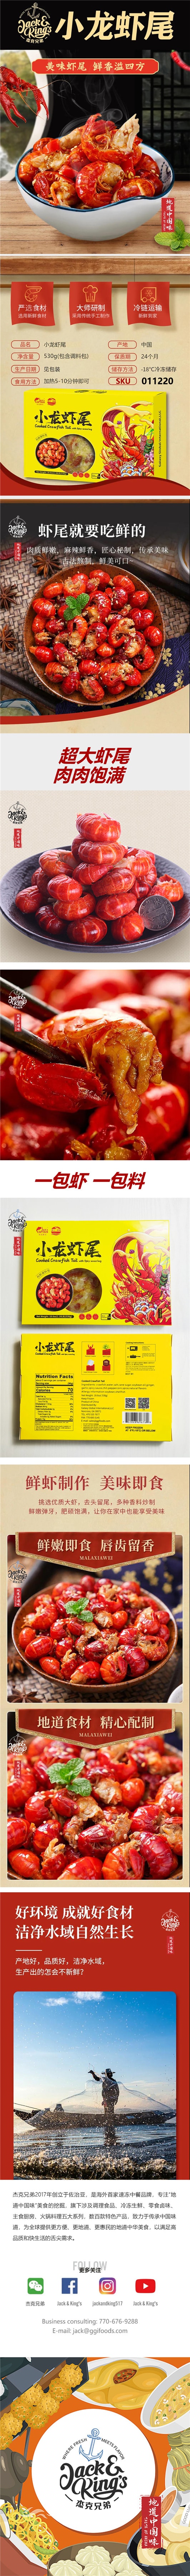 地道中国味 ⼩⻰虾尾 含秘制酱料包 18.6oz